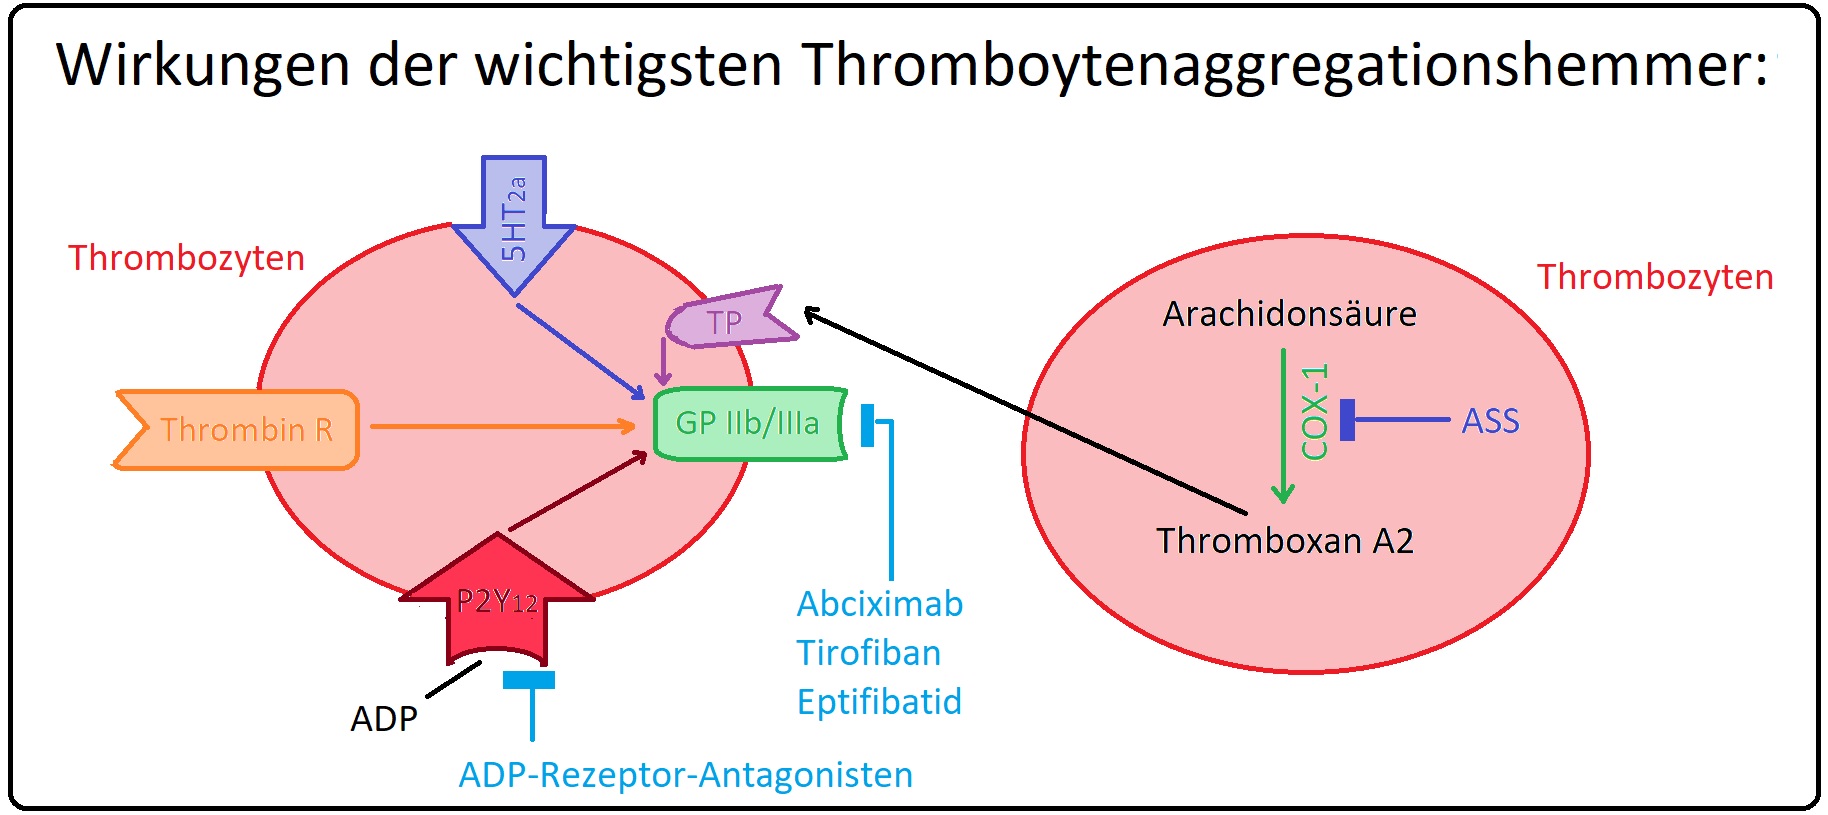 29 Wirkungen der wichtigsten Thrombozytenaggregationshemmer